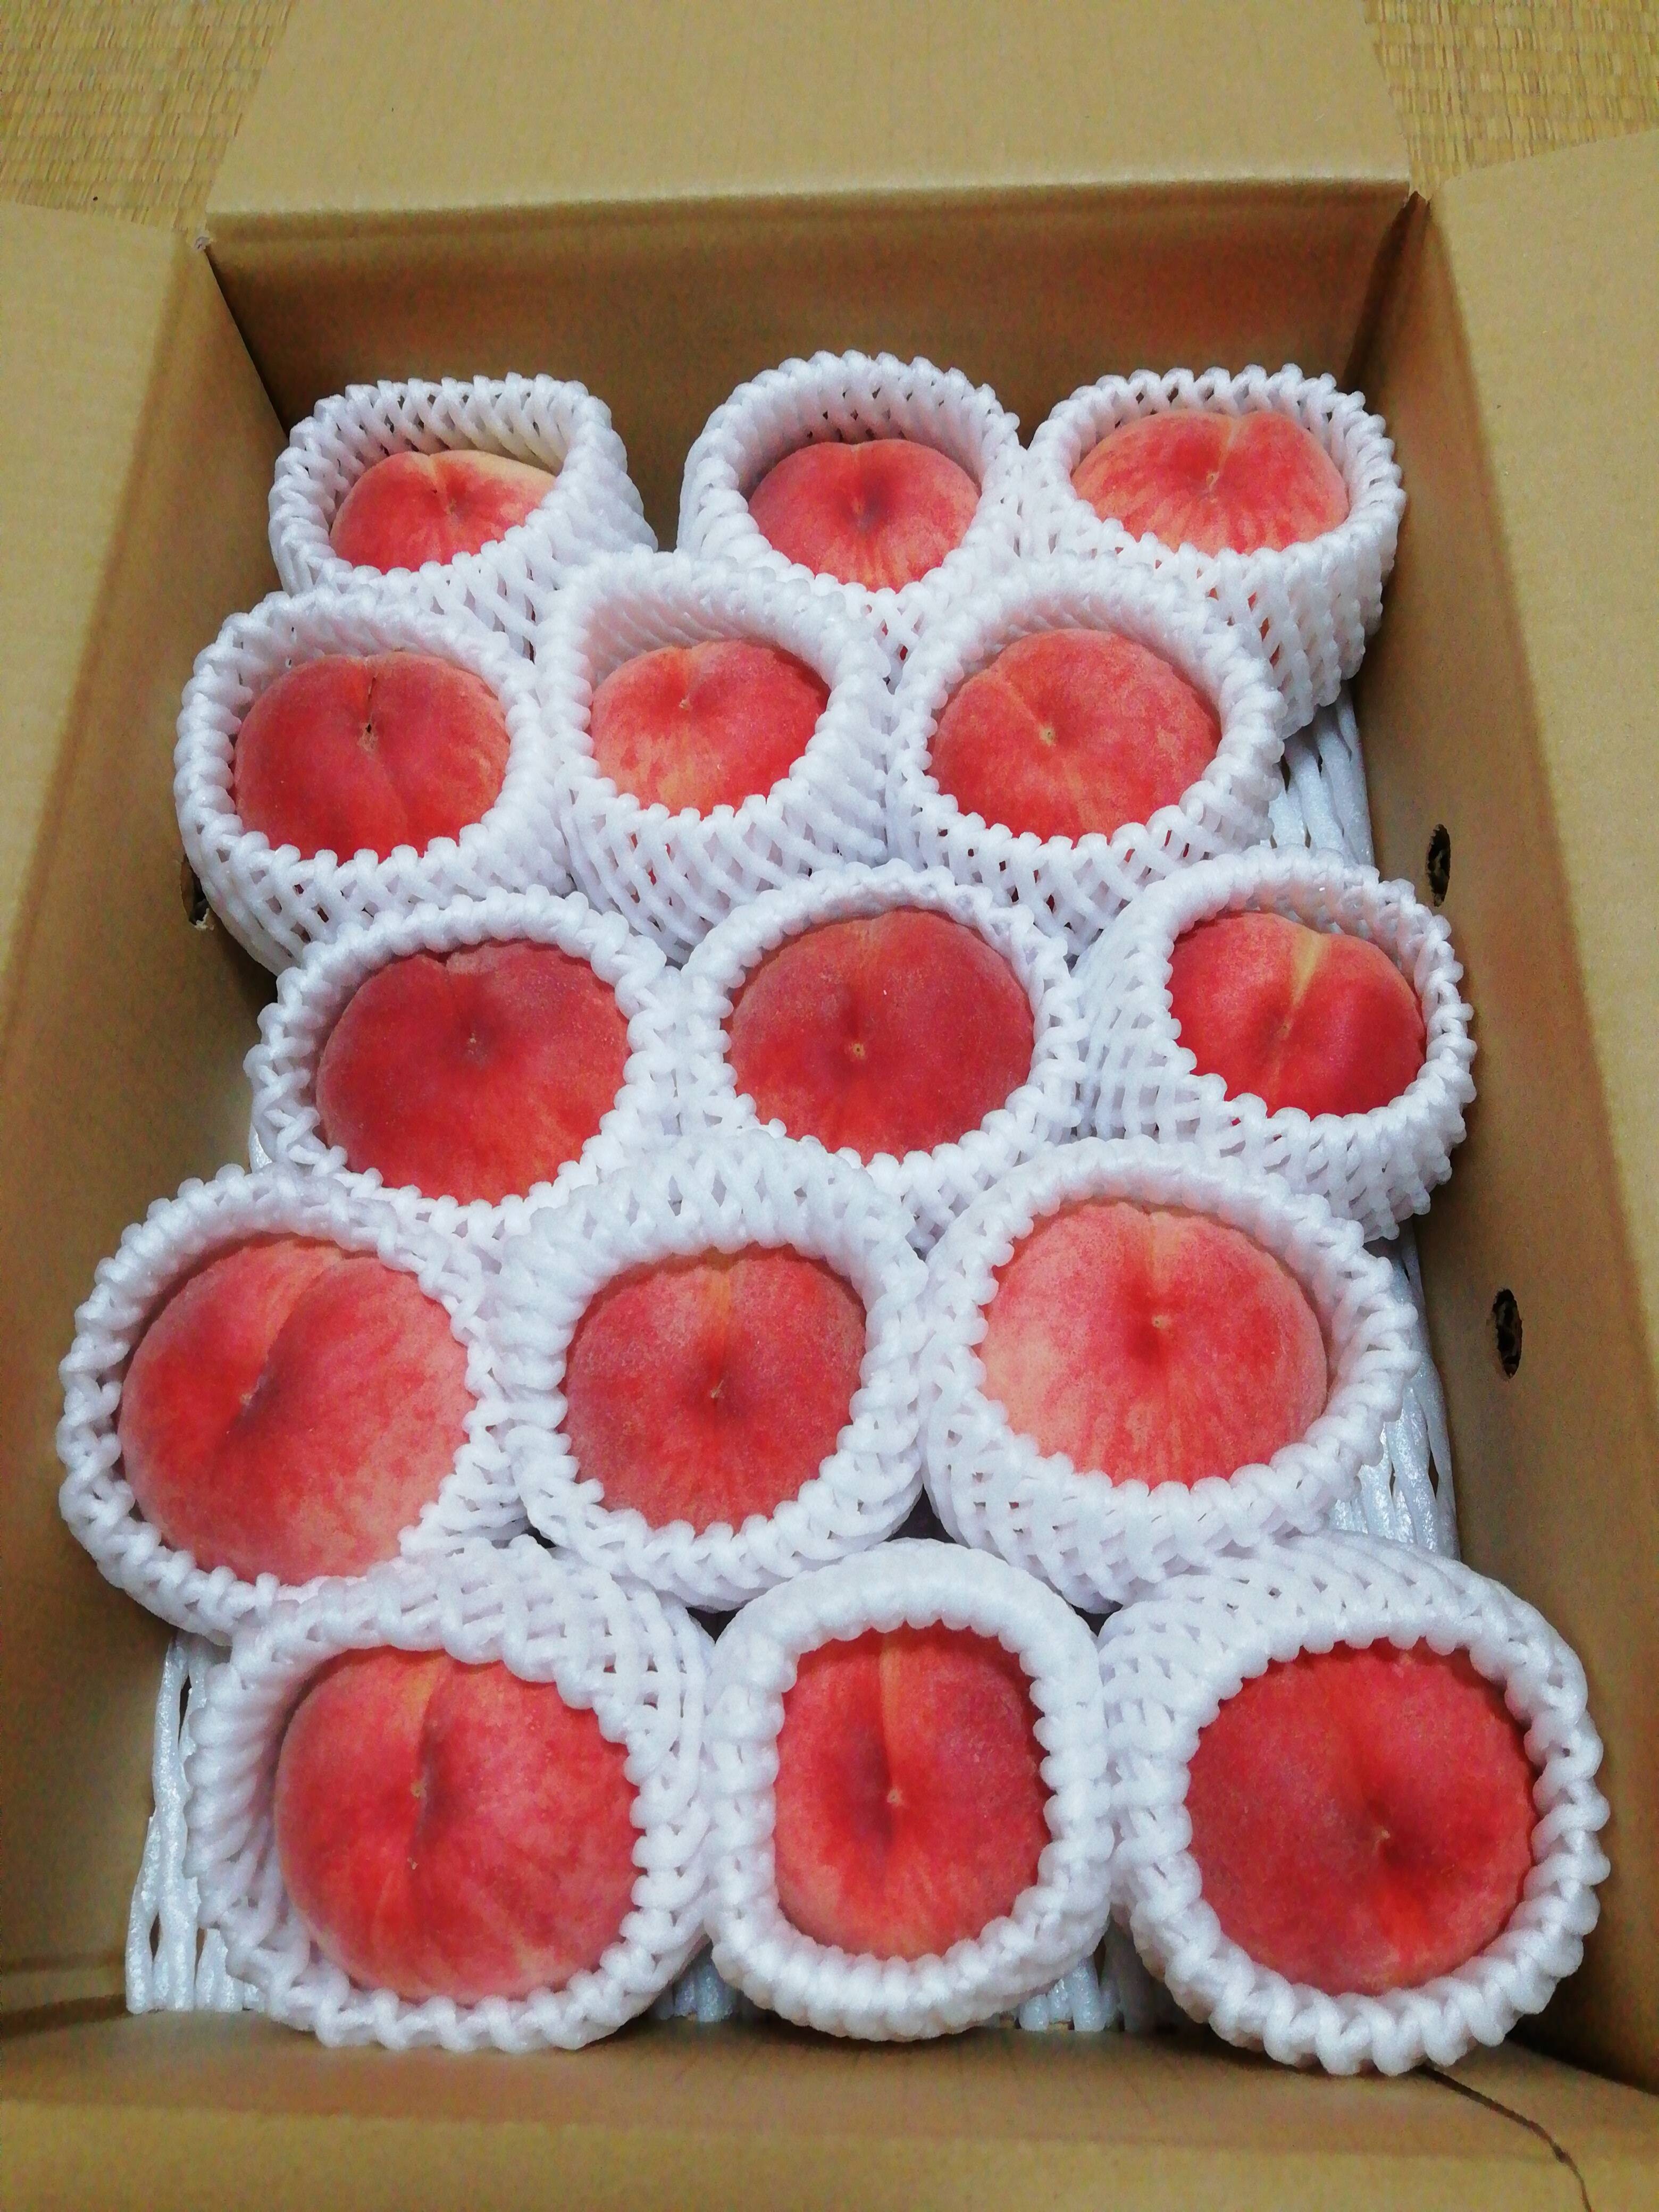 大人気の 山形県産 減農薬栽培 樹成り完熟桃 白鳳 2キロ箱 ご家庭用